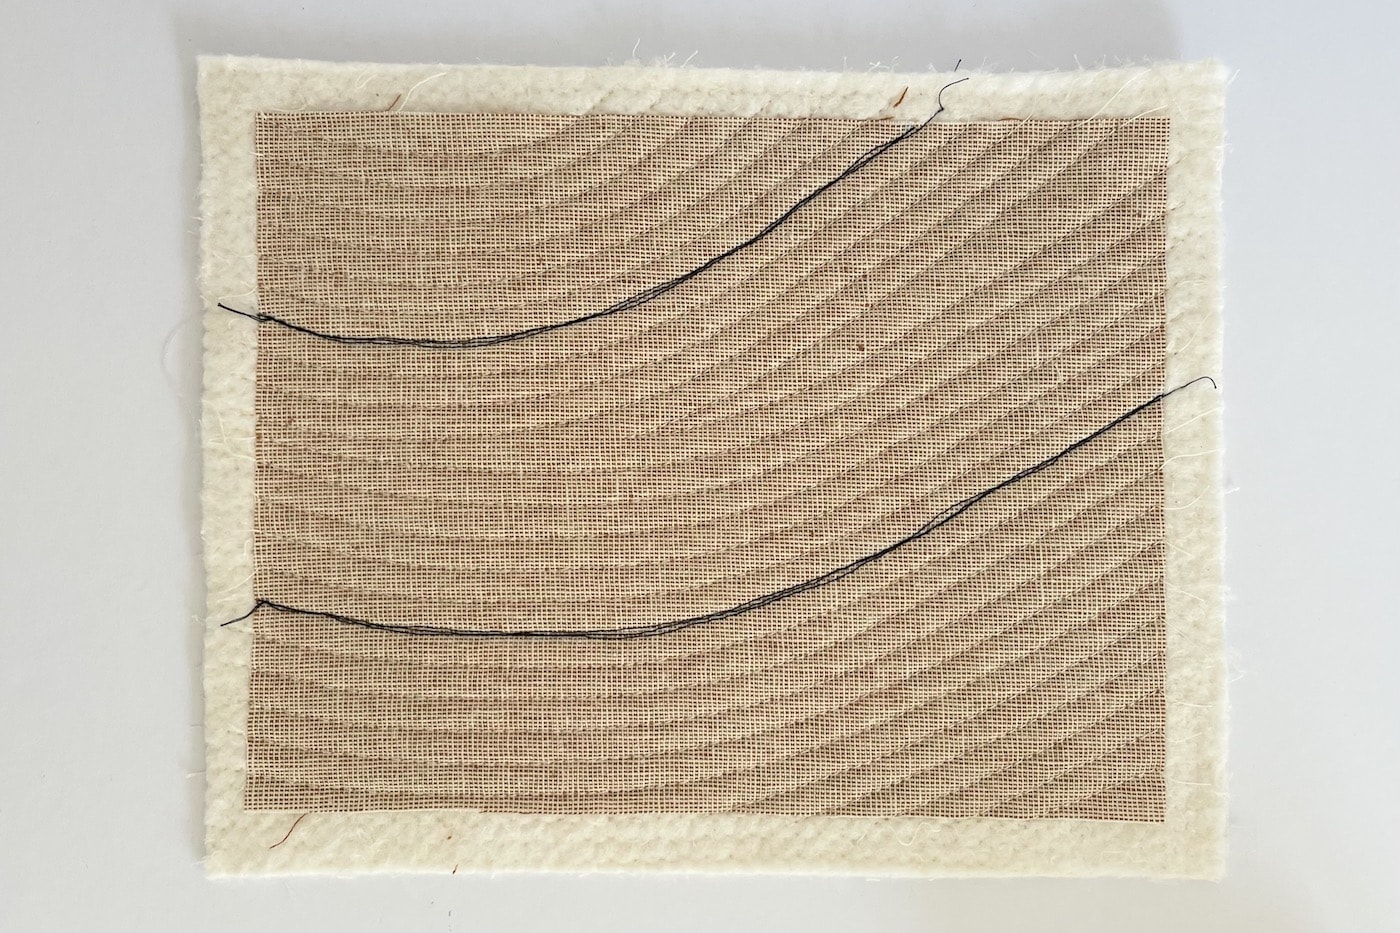 tissu beige sur table blanche avec des lignes cousues et matelassées